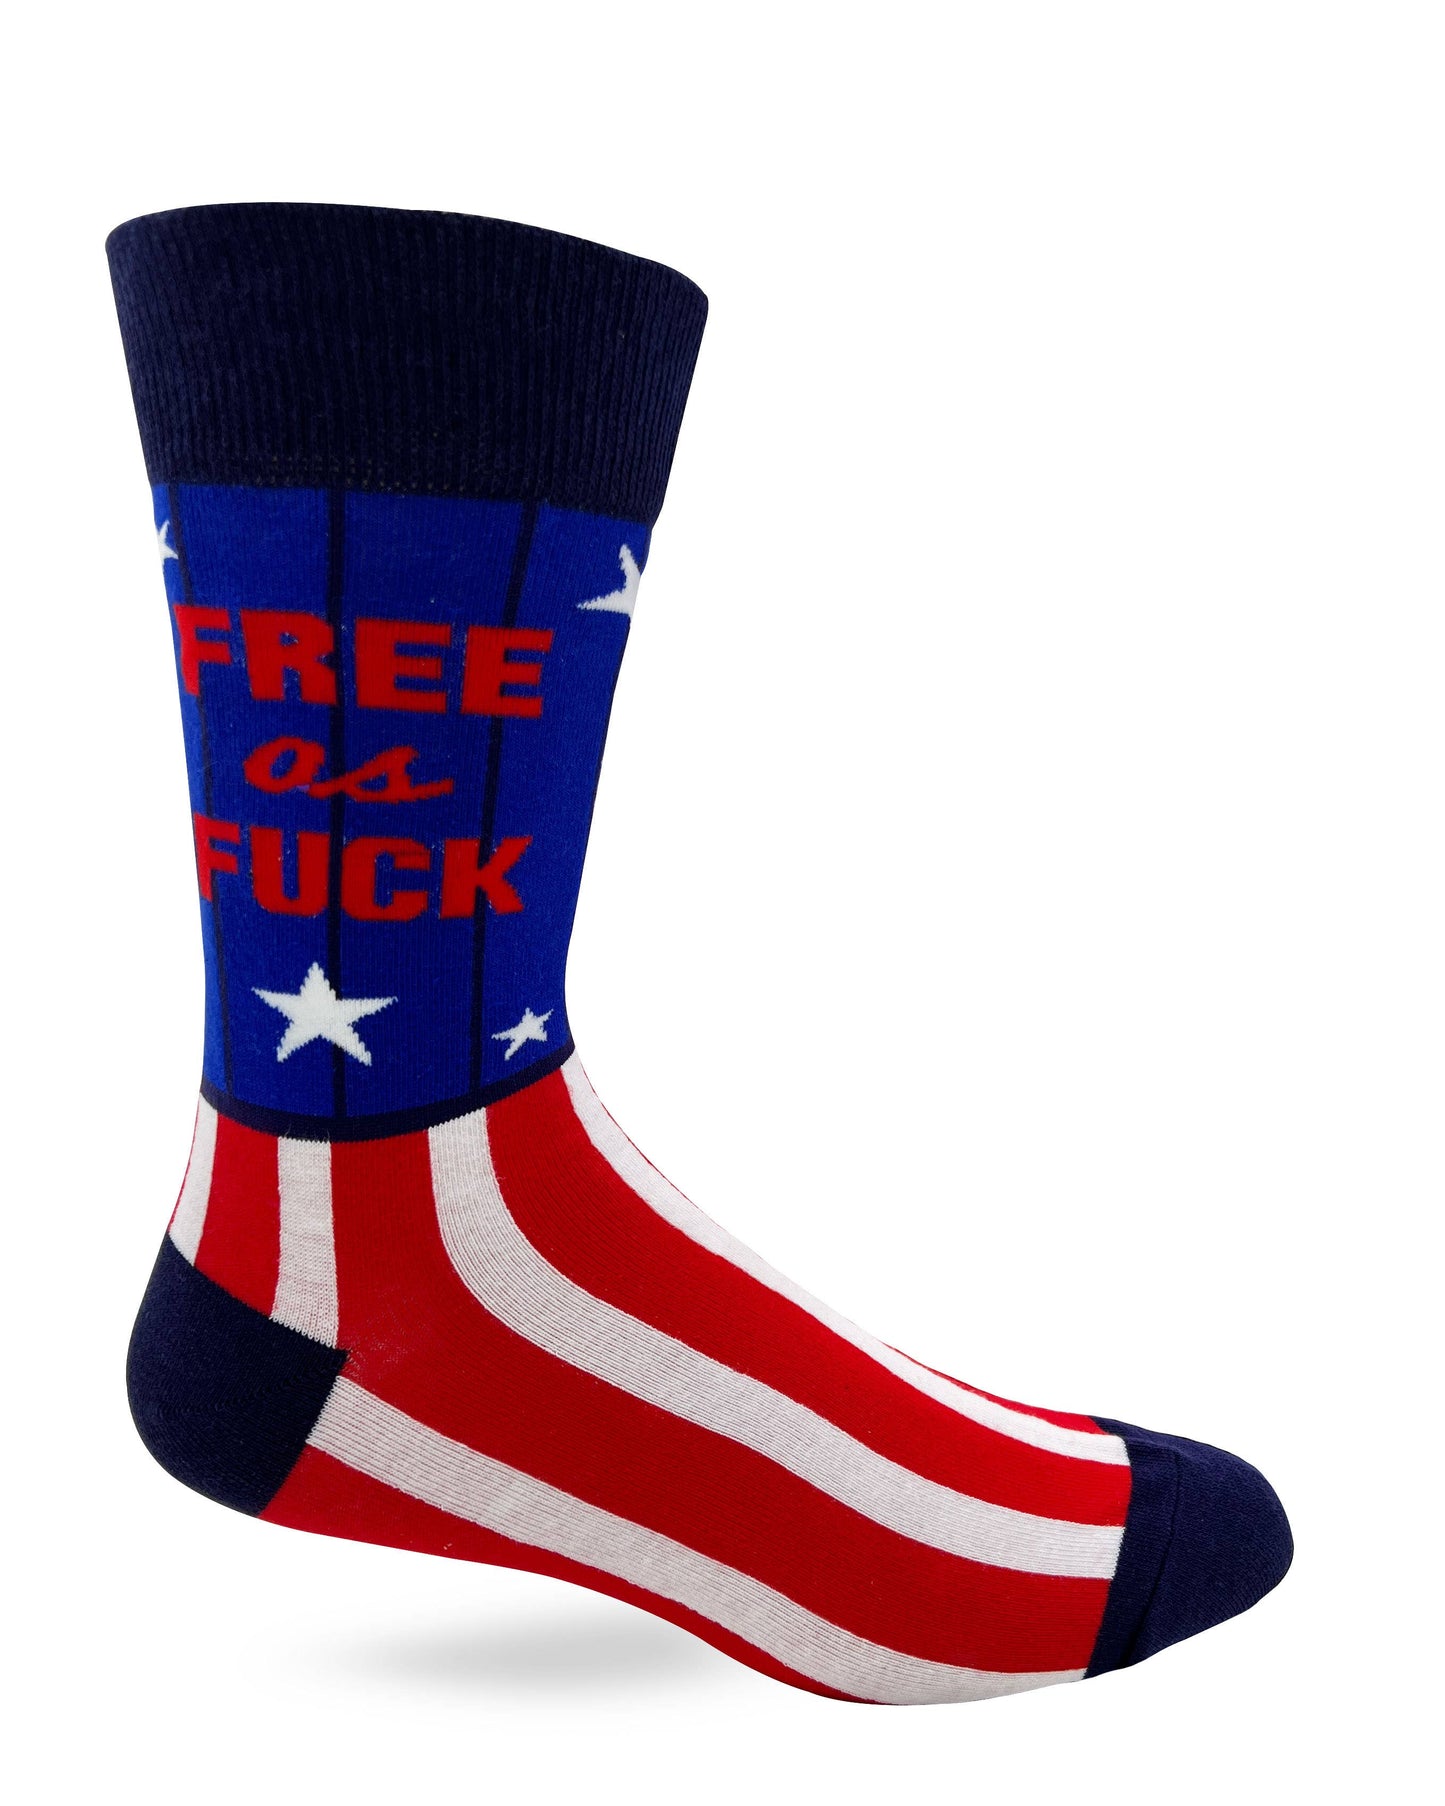 Free As F..k Men's Novelty Crew Socks